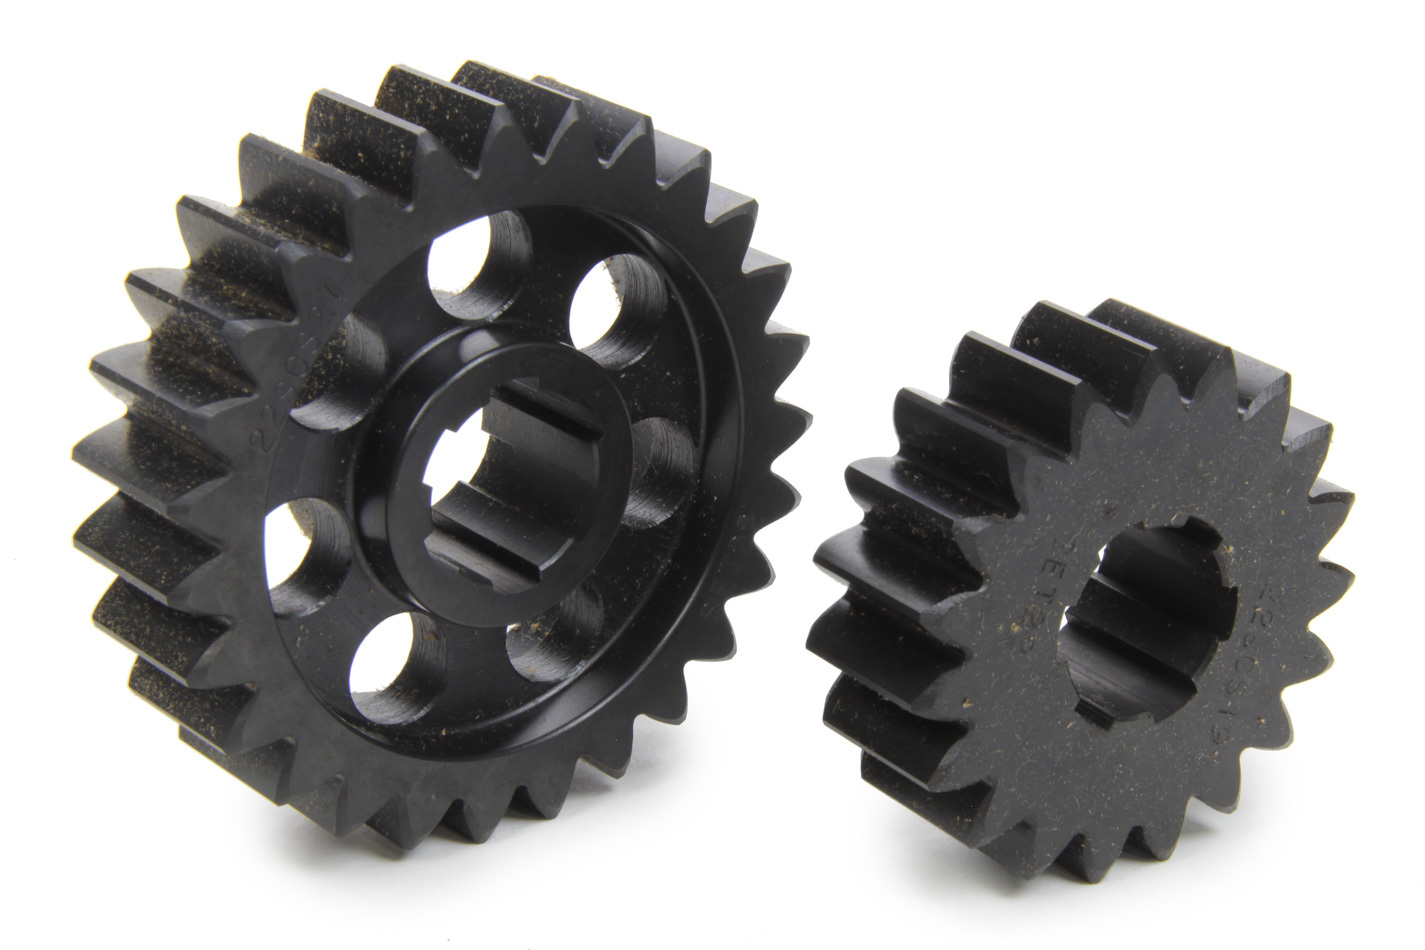 SCS Gears 622 Quick Change Gear Set, Professional, Set 622, 6 Spline, 4.11 Ratio 2.89 / 5.84, 4.33 Ratio 3.05 / 6.15, Steel, Each